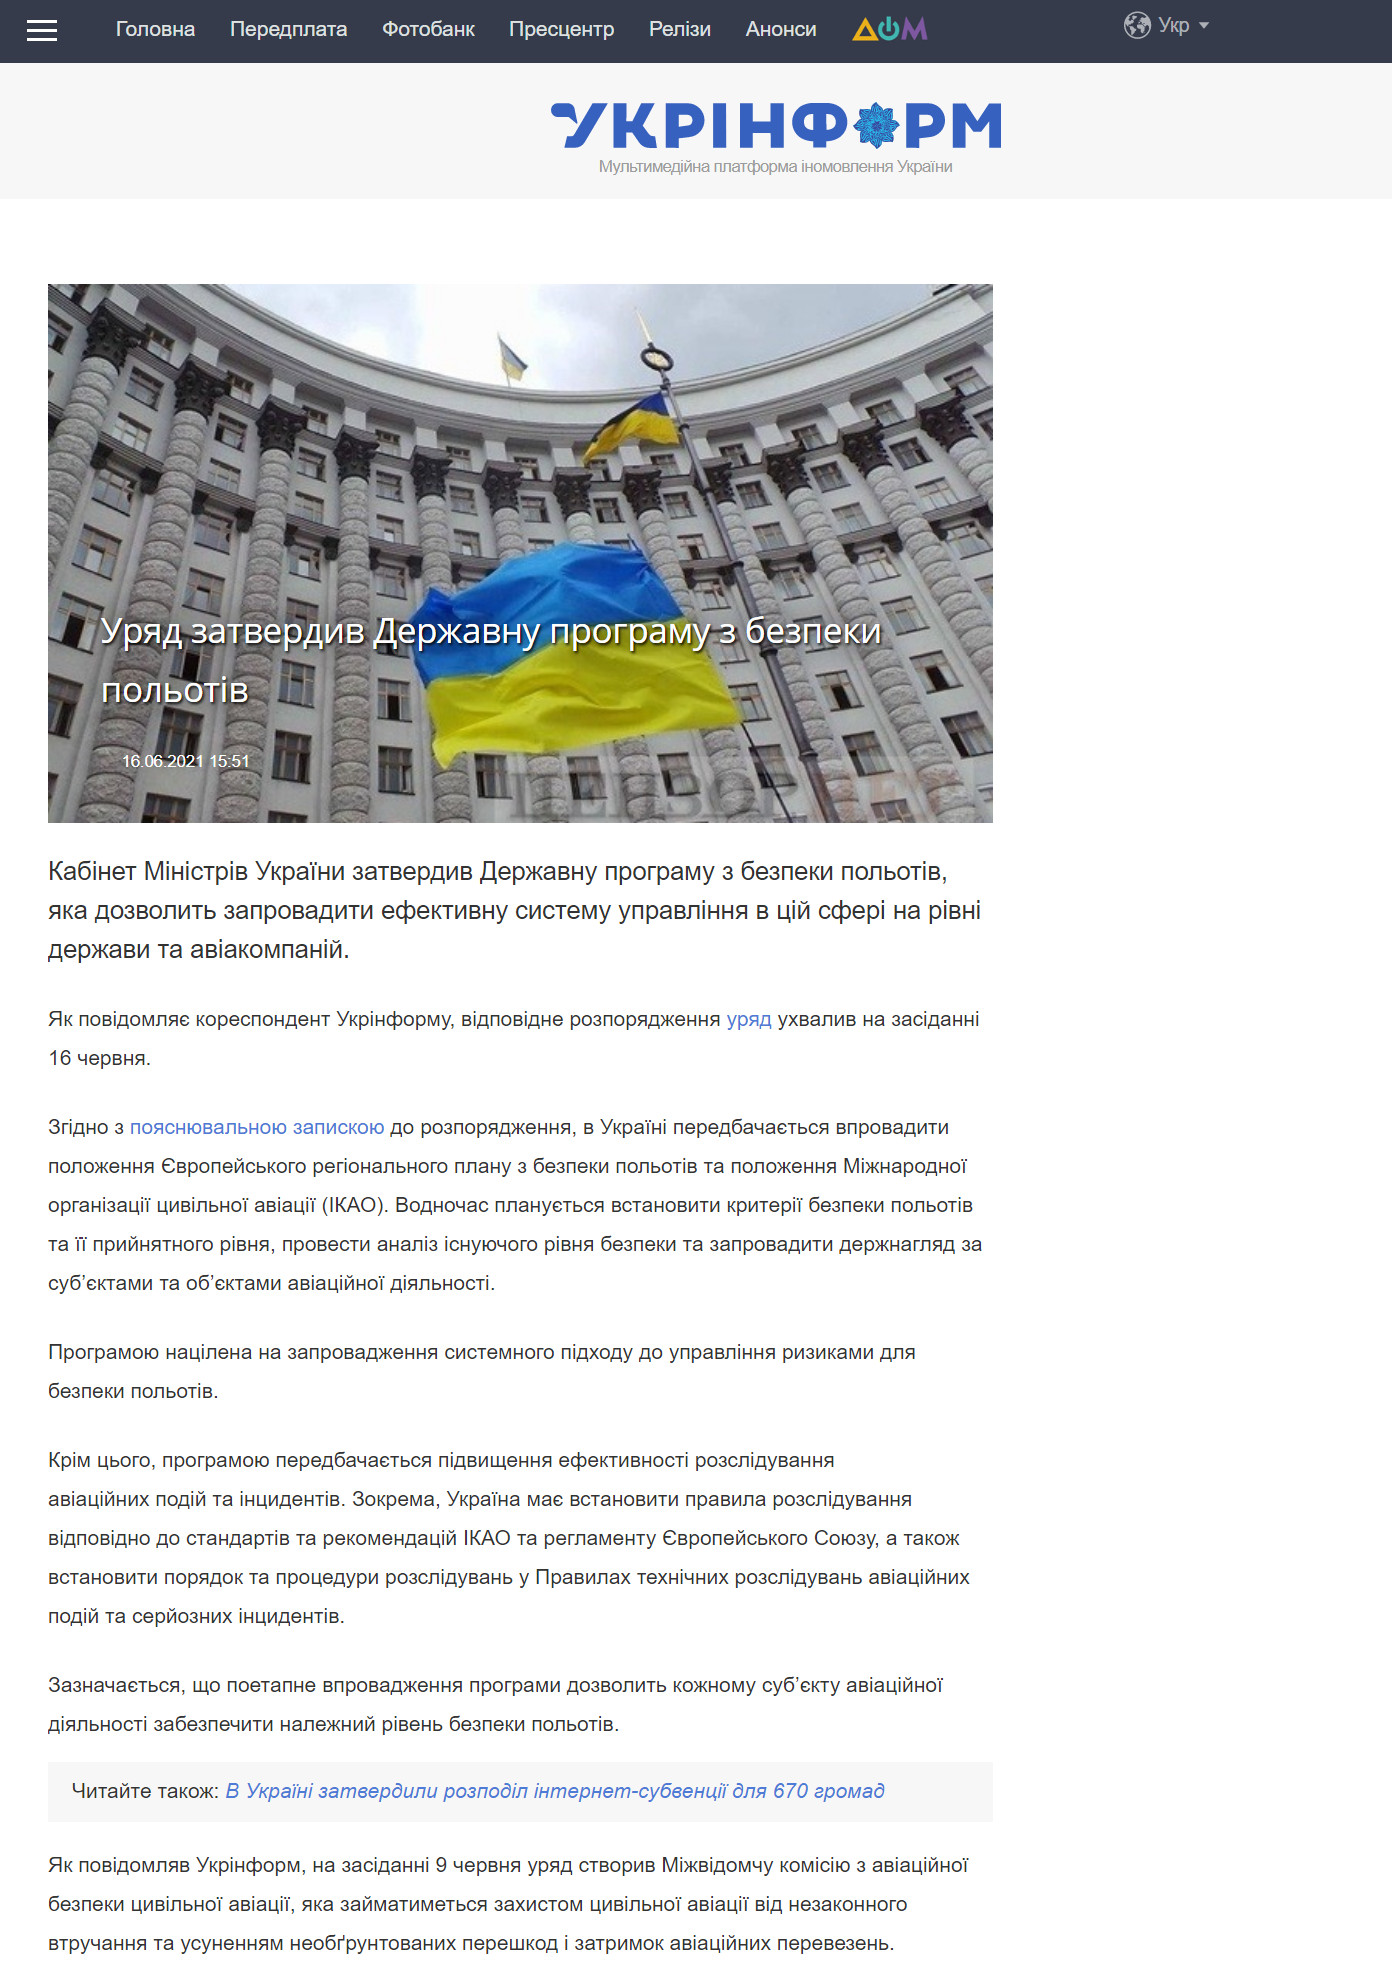 https://www.ukrinform.ua/rubric-economy/3265736-urad-zatverdiv-derzavnu-programu-z-bezpeki-polotiv.html